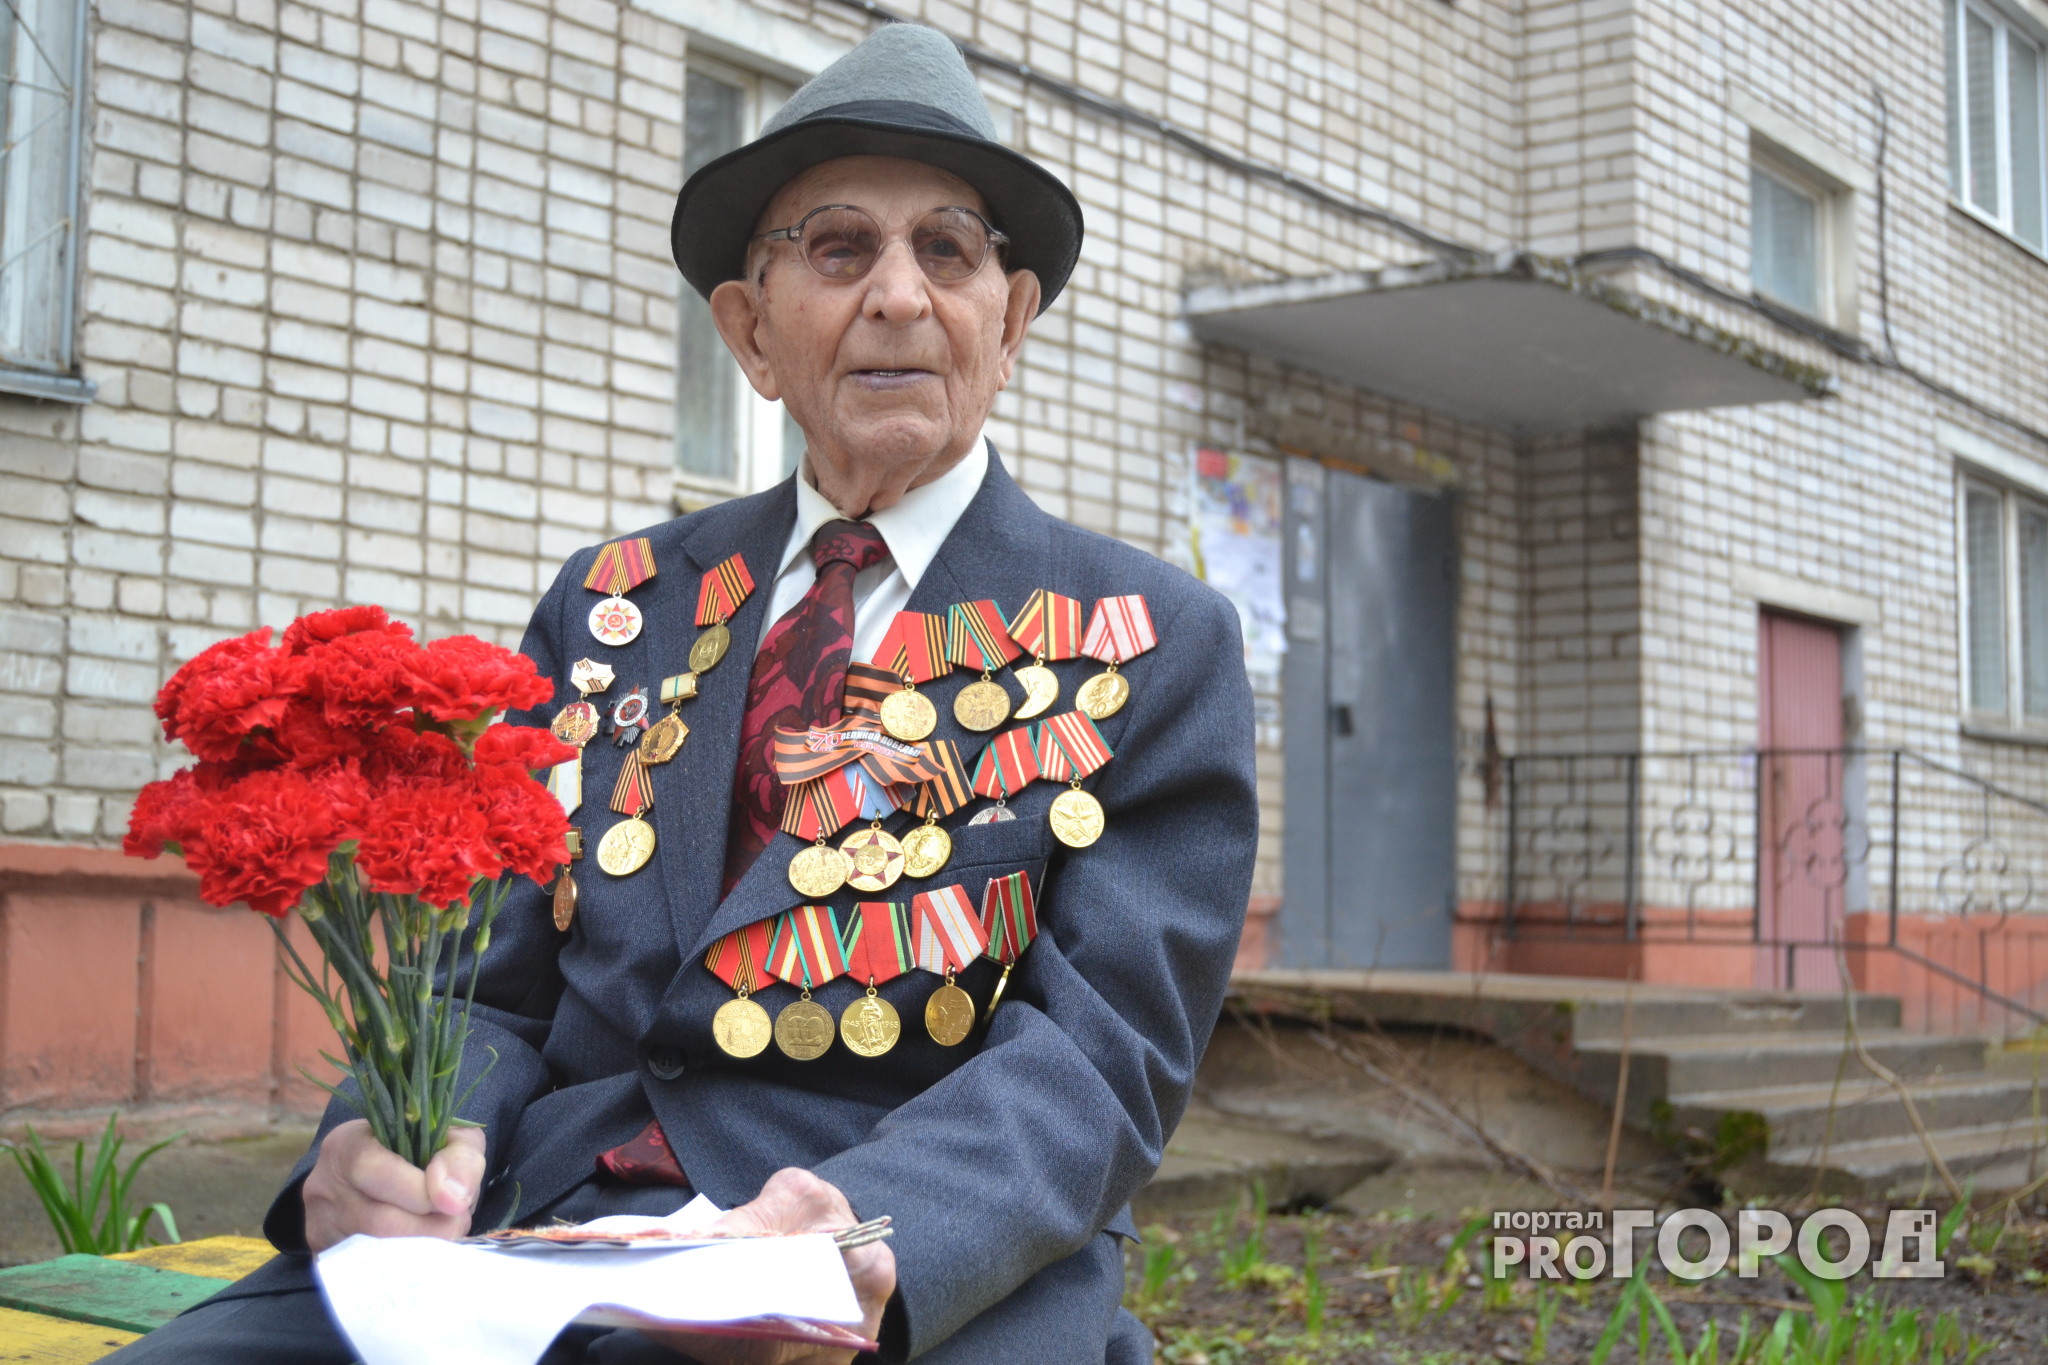 Ветеран: «Через 50 лет после войны узнал, что во мне сидит пуля»